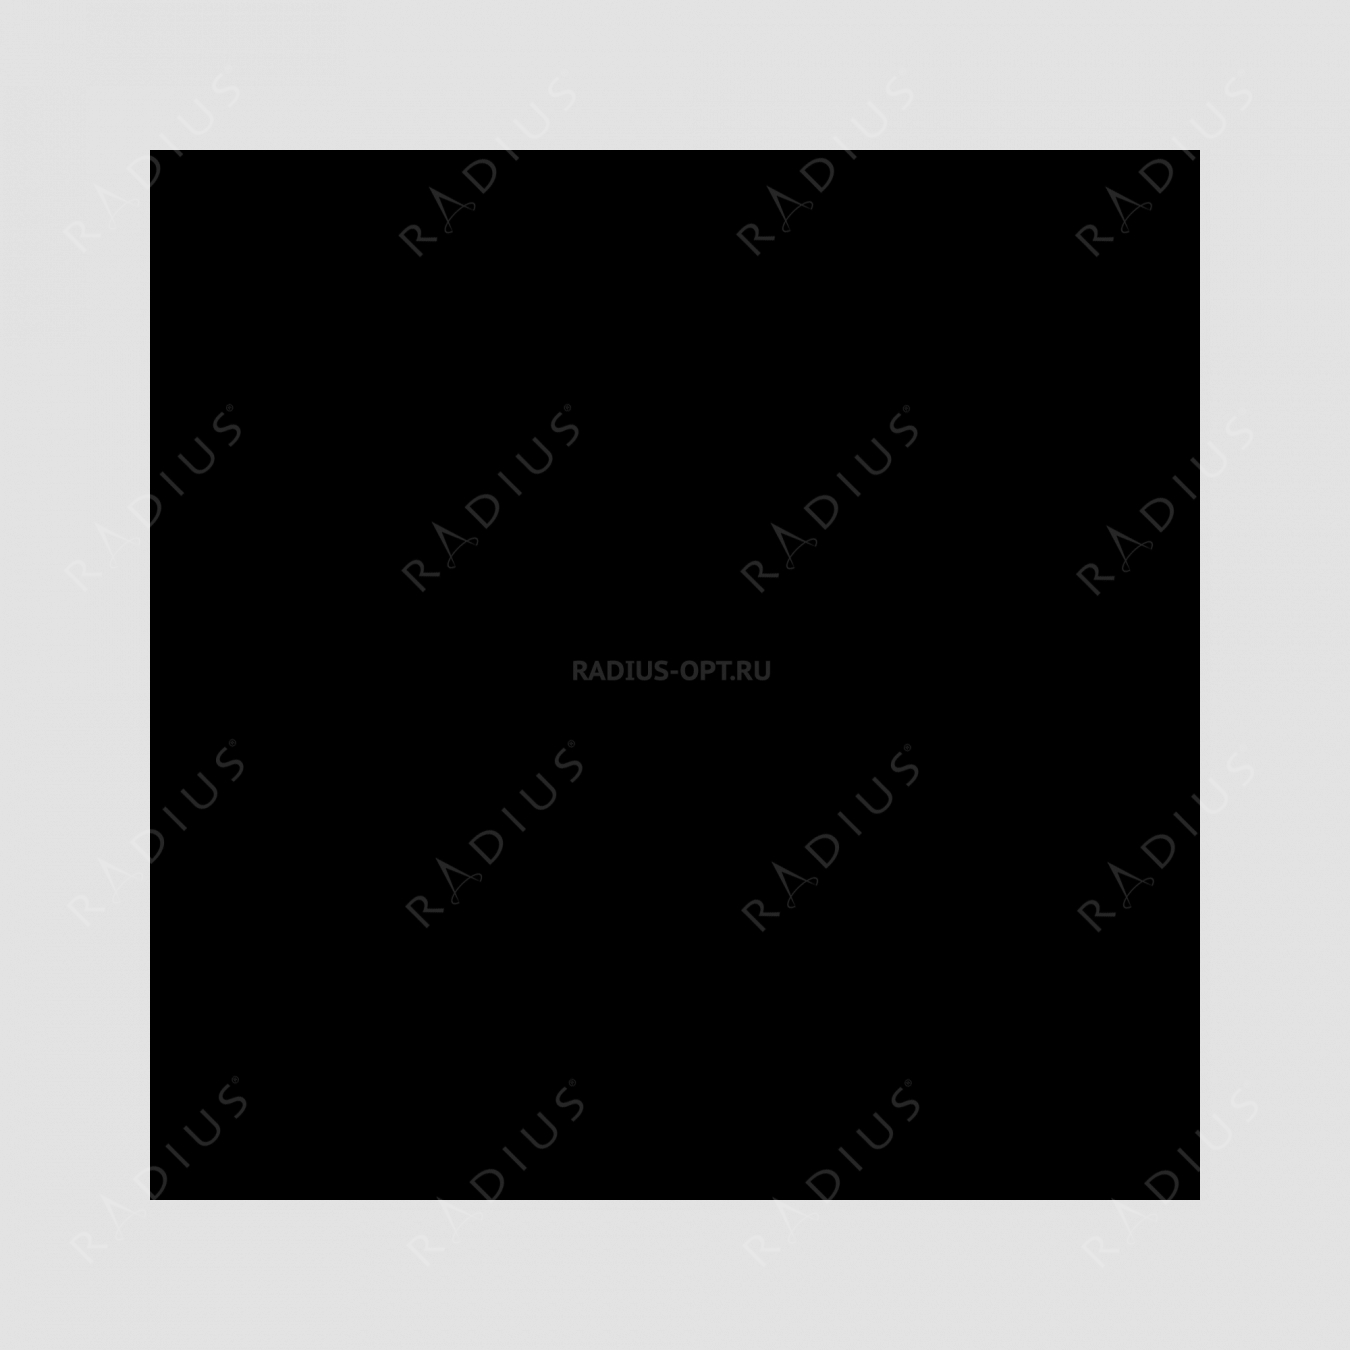 Кастрюля с крышкой, овальная, диаметр 27 см, объем 4,0 л, чугун с эмалированным покрытием, цвет черный, серия Noir mat, INVICTA, Франция